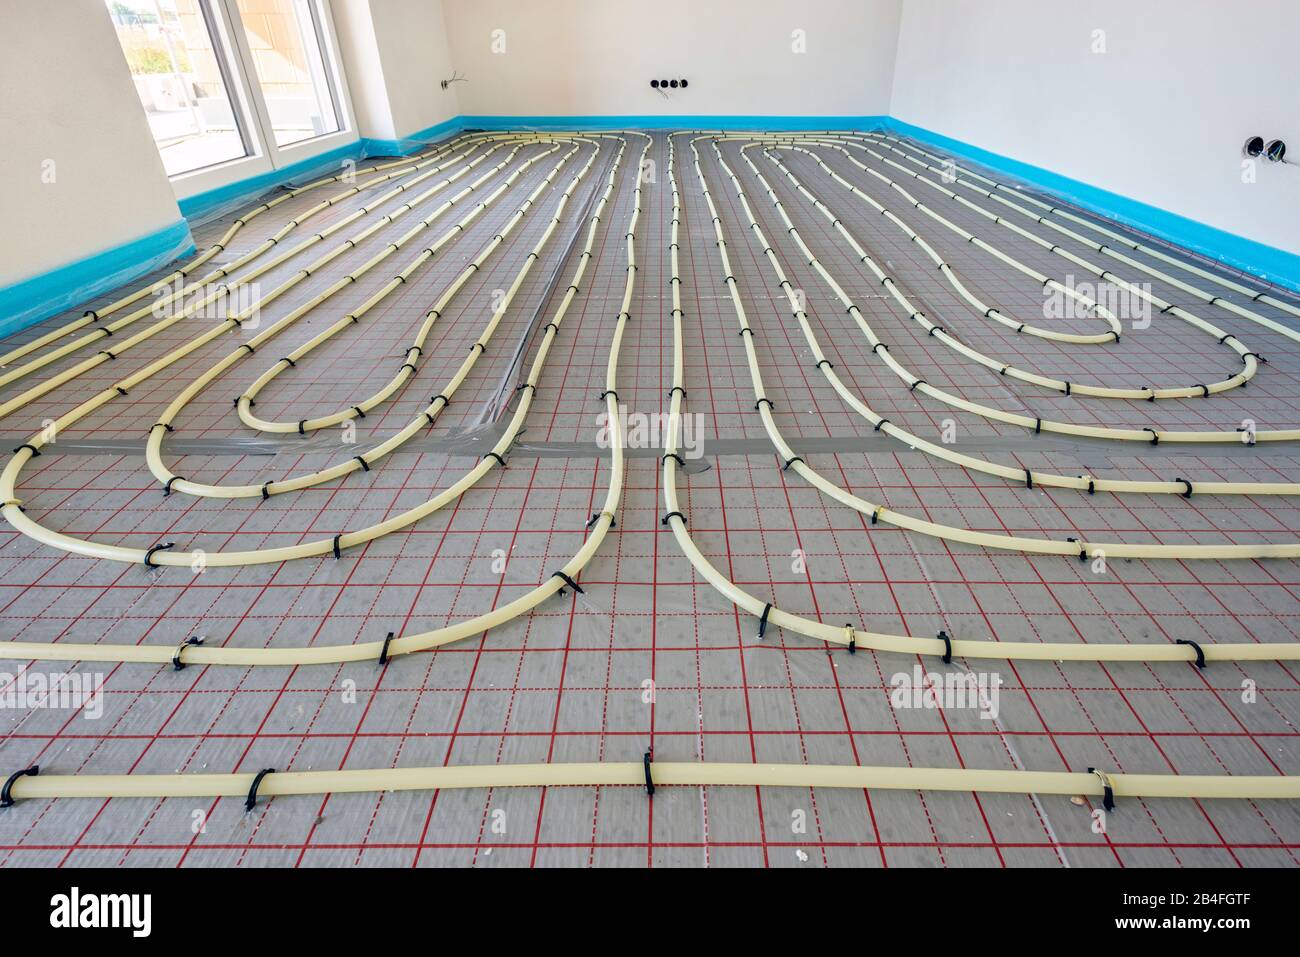 Fußbodenheizung mit Heizschlangen in einem Neubau Stock Photo